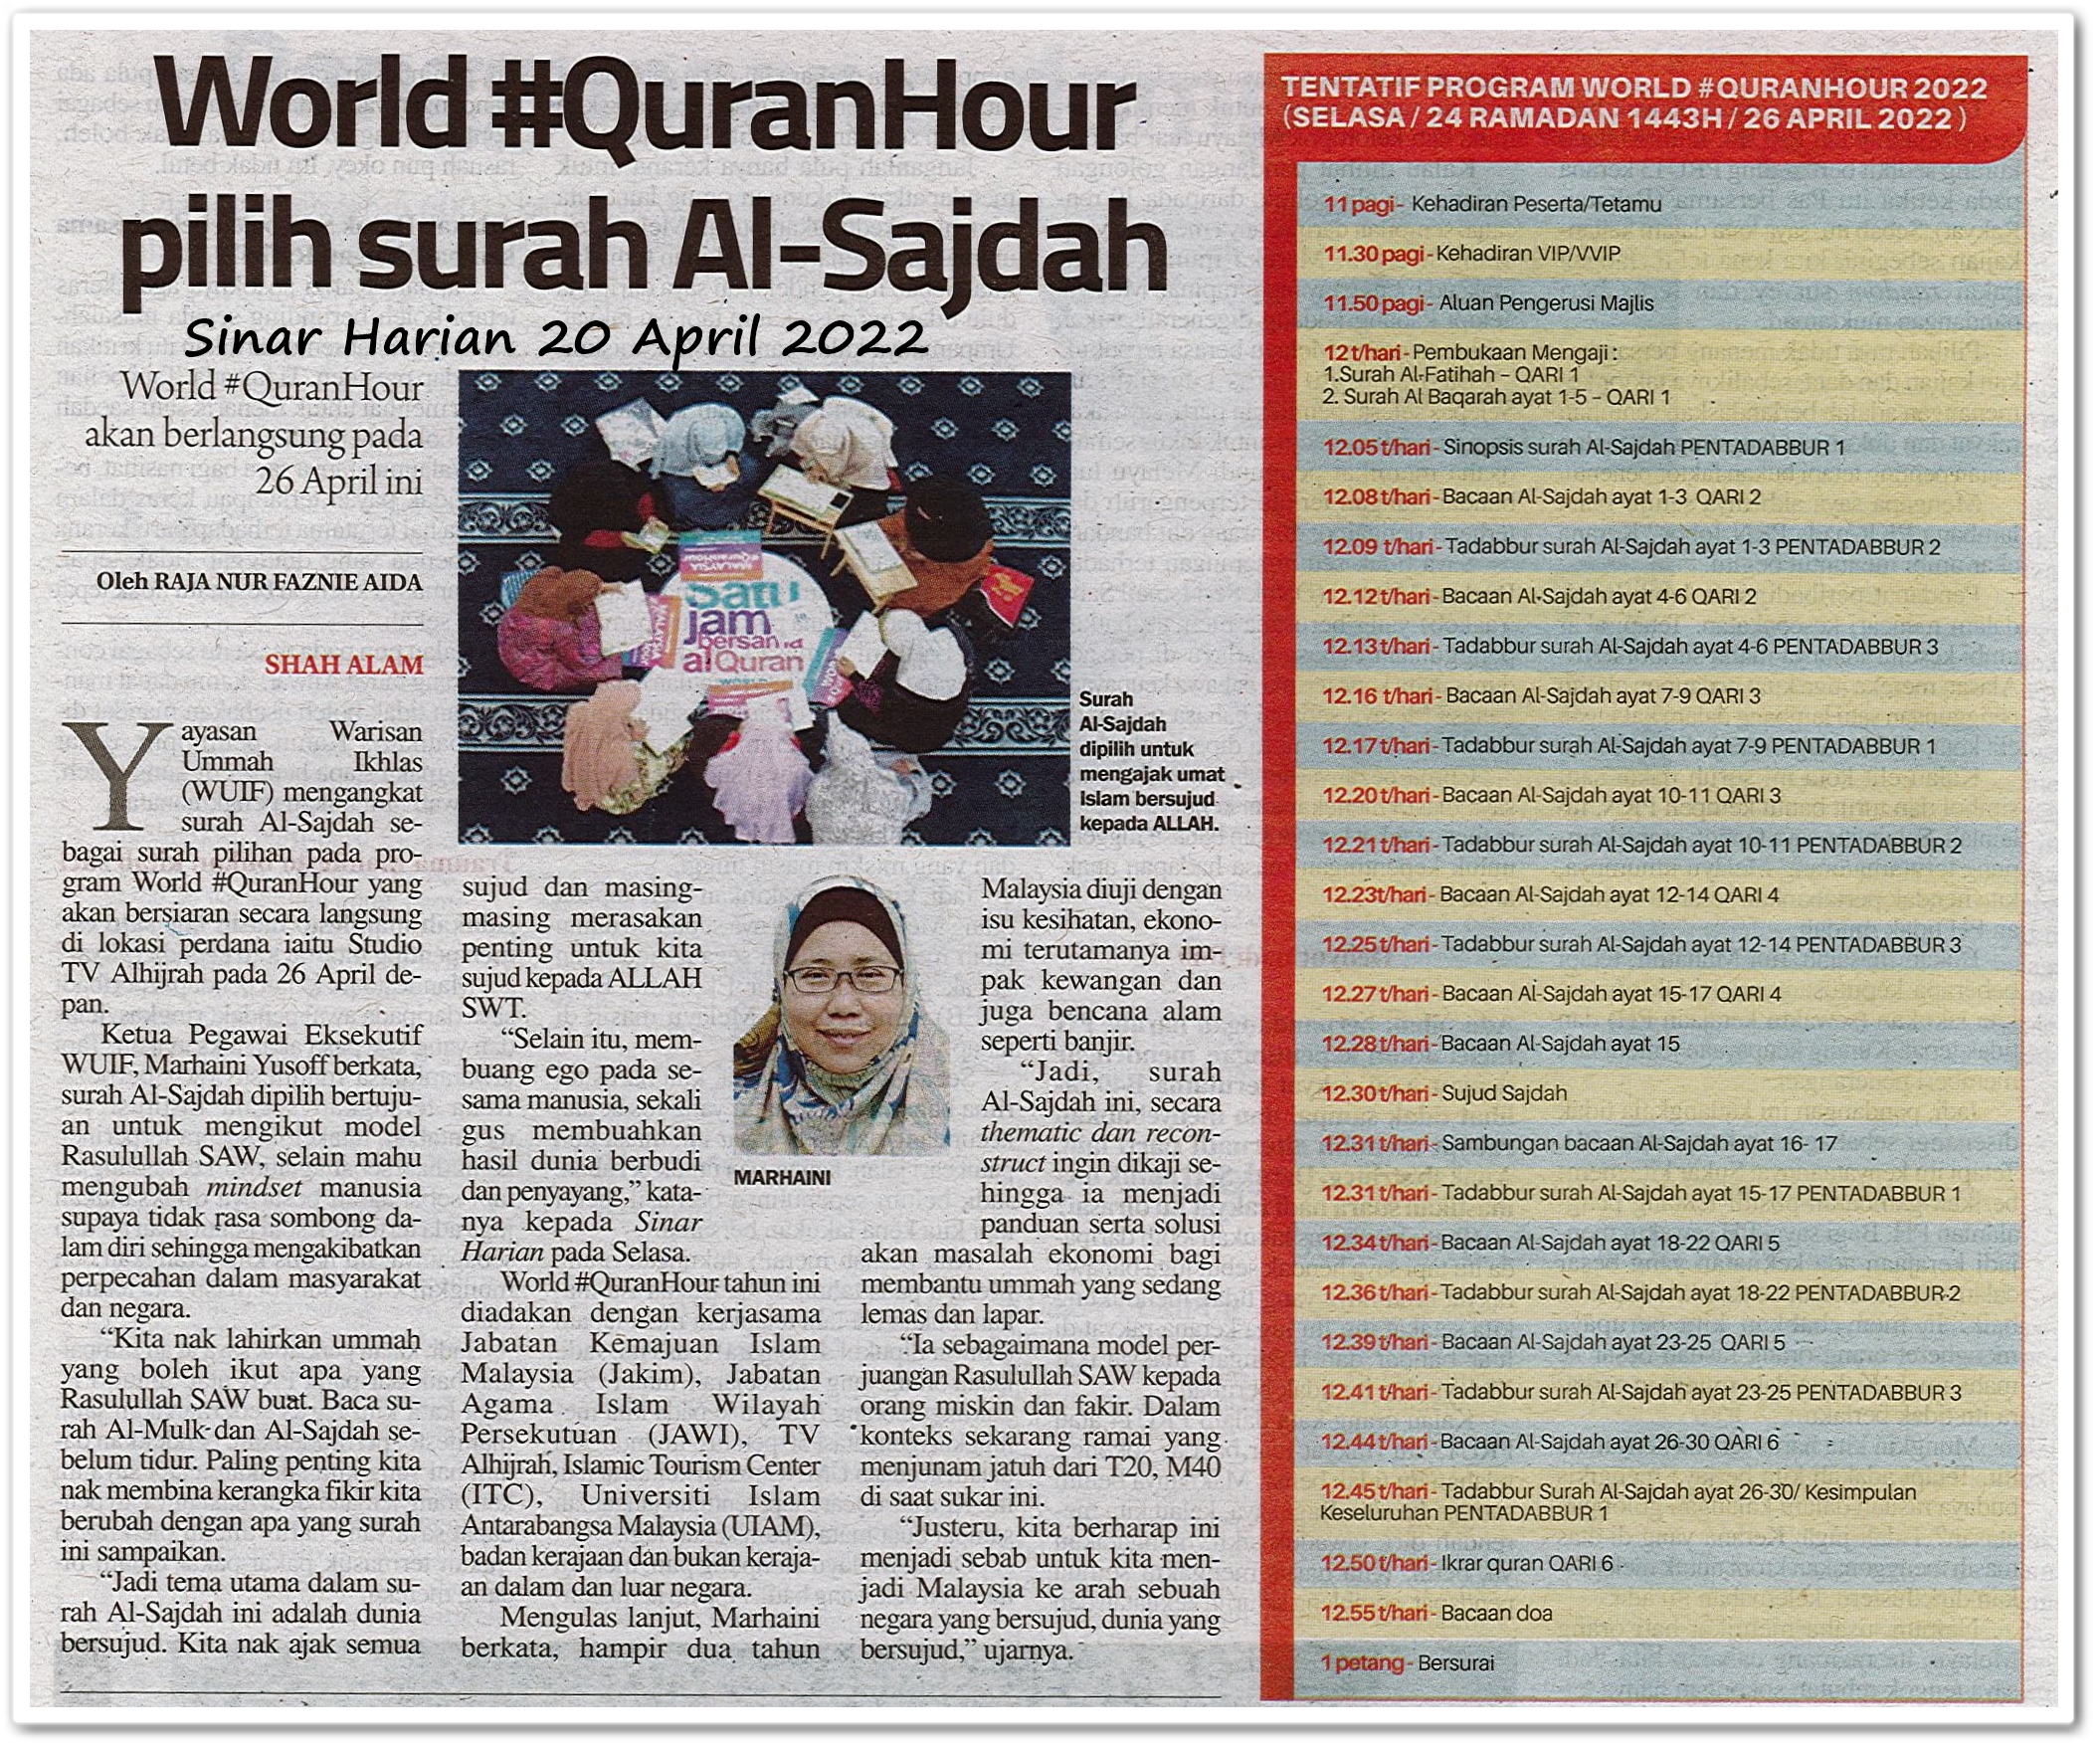 World QuranHour pilih surah Al-Sajdah - Keratan akhbar Sinar Harian 20 April 2022